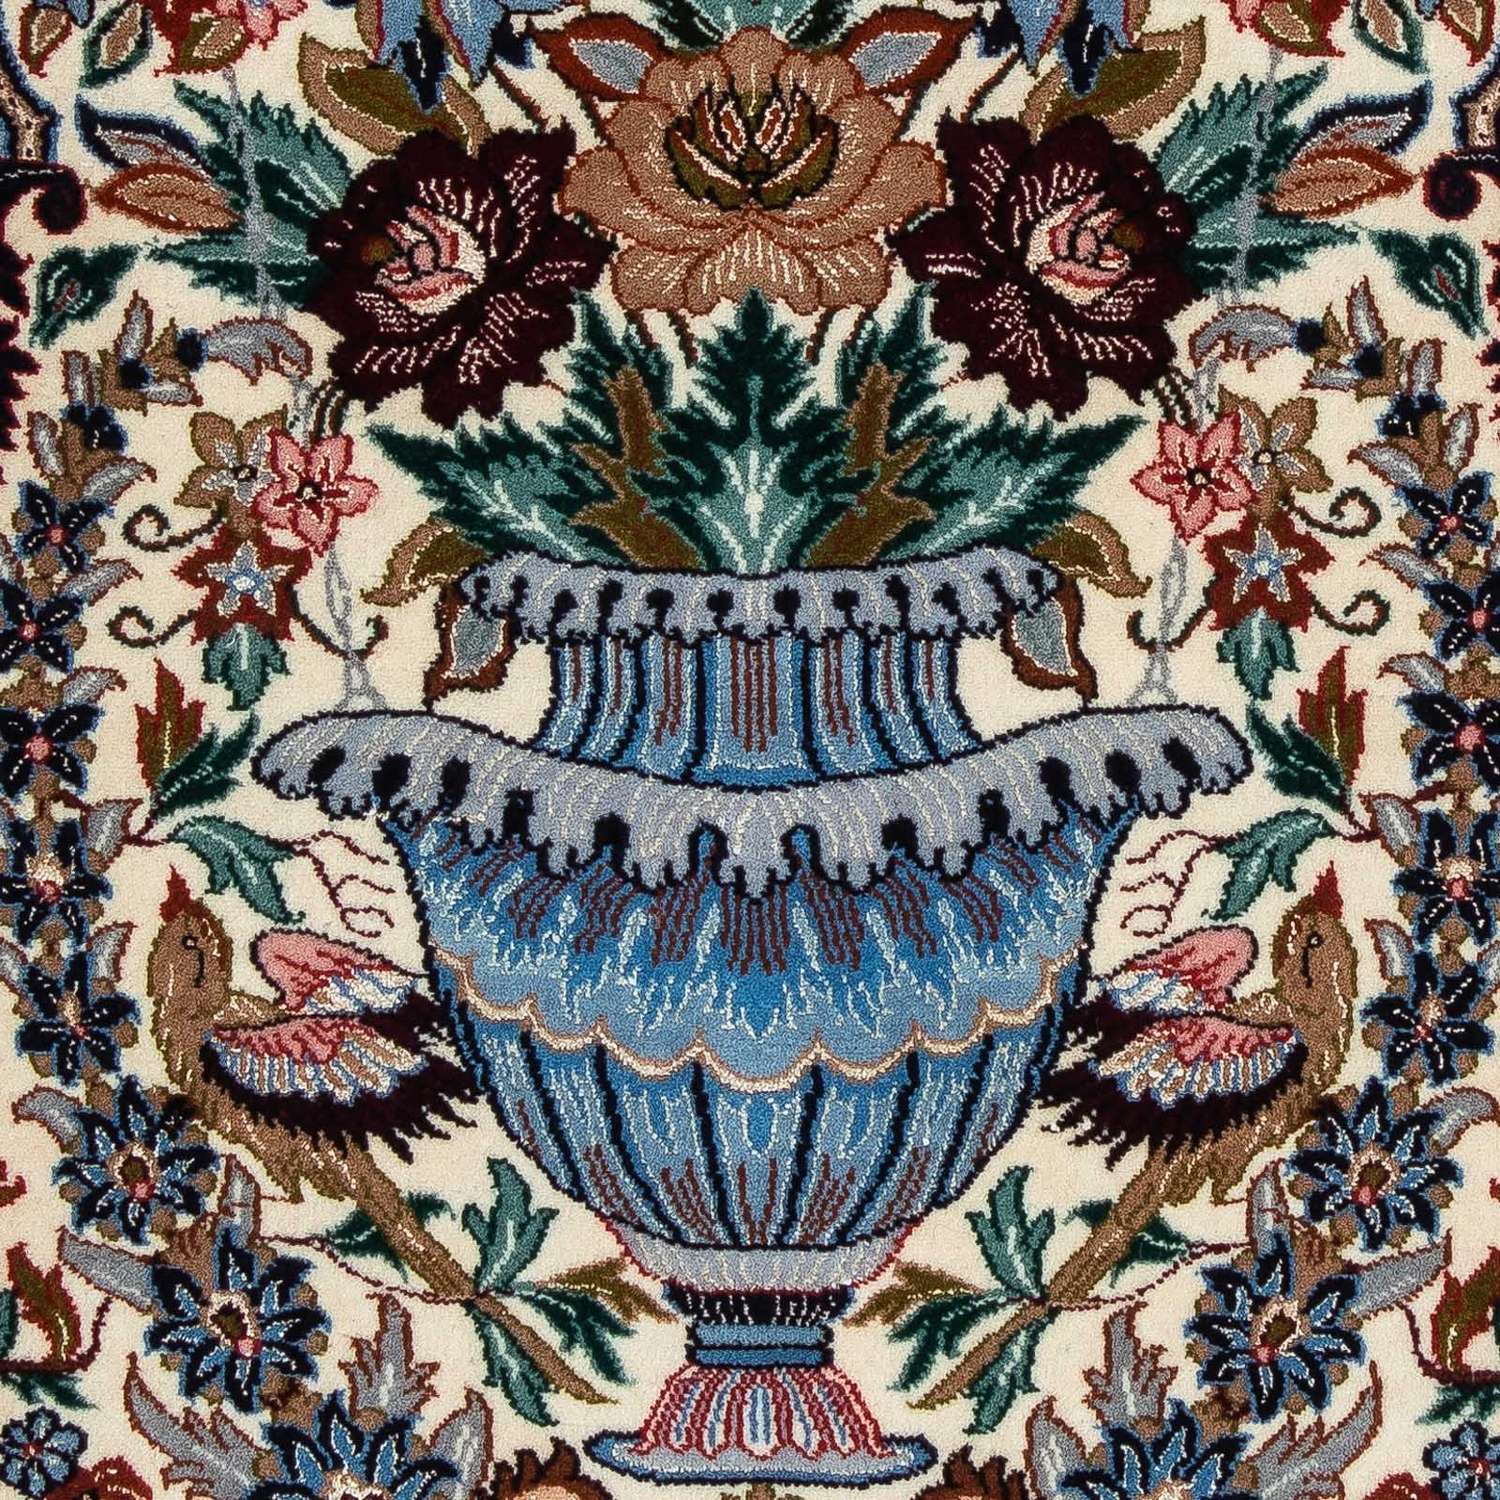 Perser Rug - Isfahan - Premium - 108 x 69 cm - multicolored